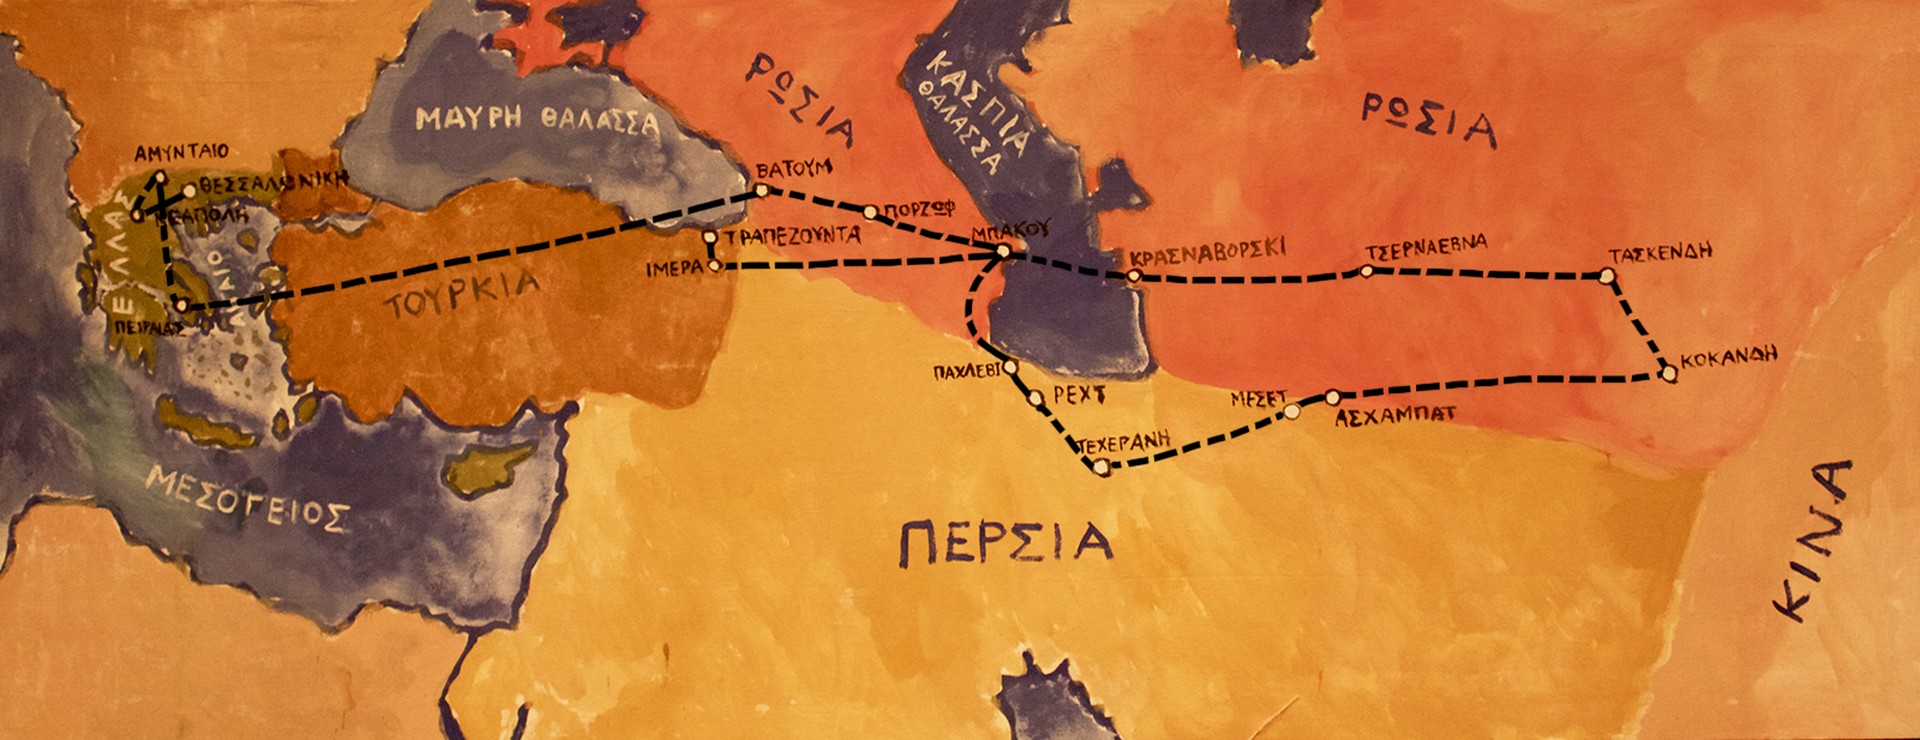 Το 12ετές προσφυγικό ταξίδι της Αντιγόνης Μαυρομματοπούλου στις αρχές του περασμένου αιώνα. 